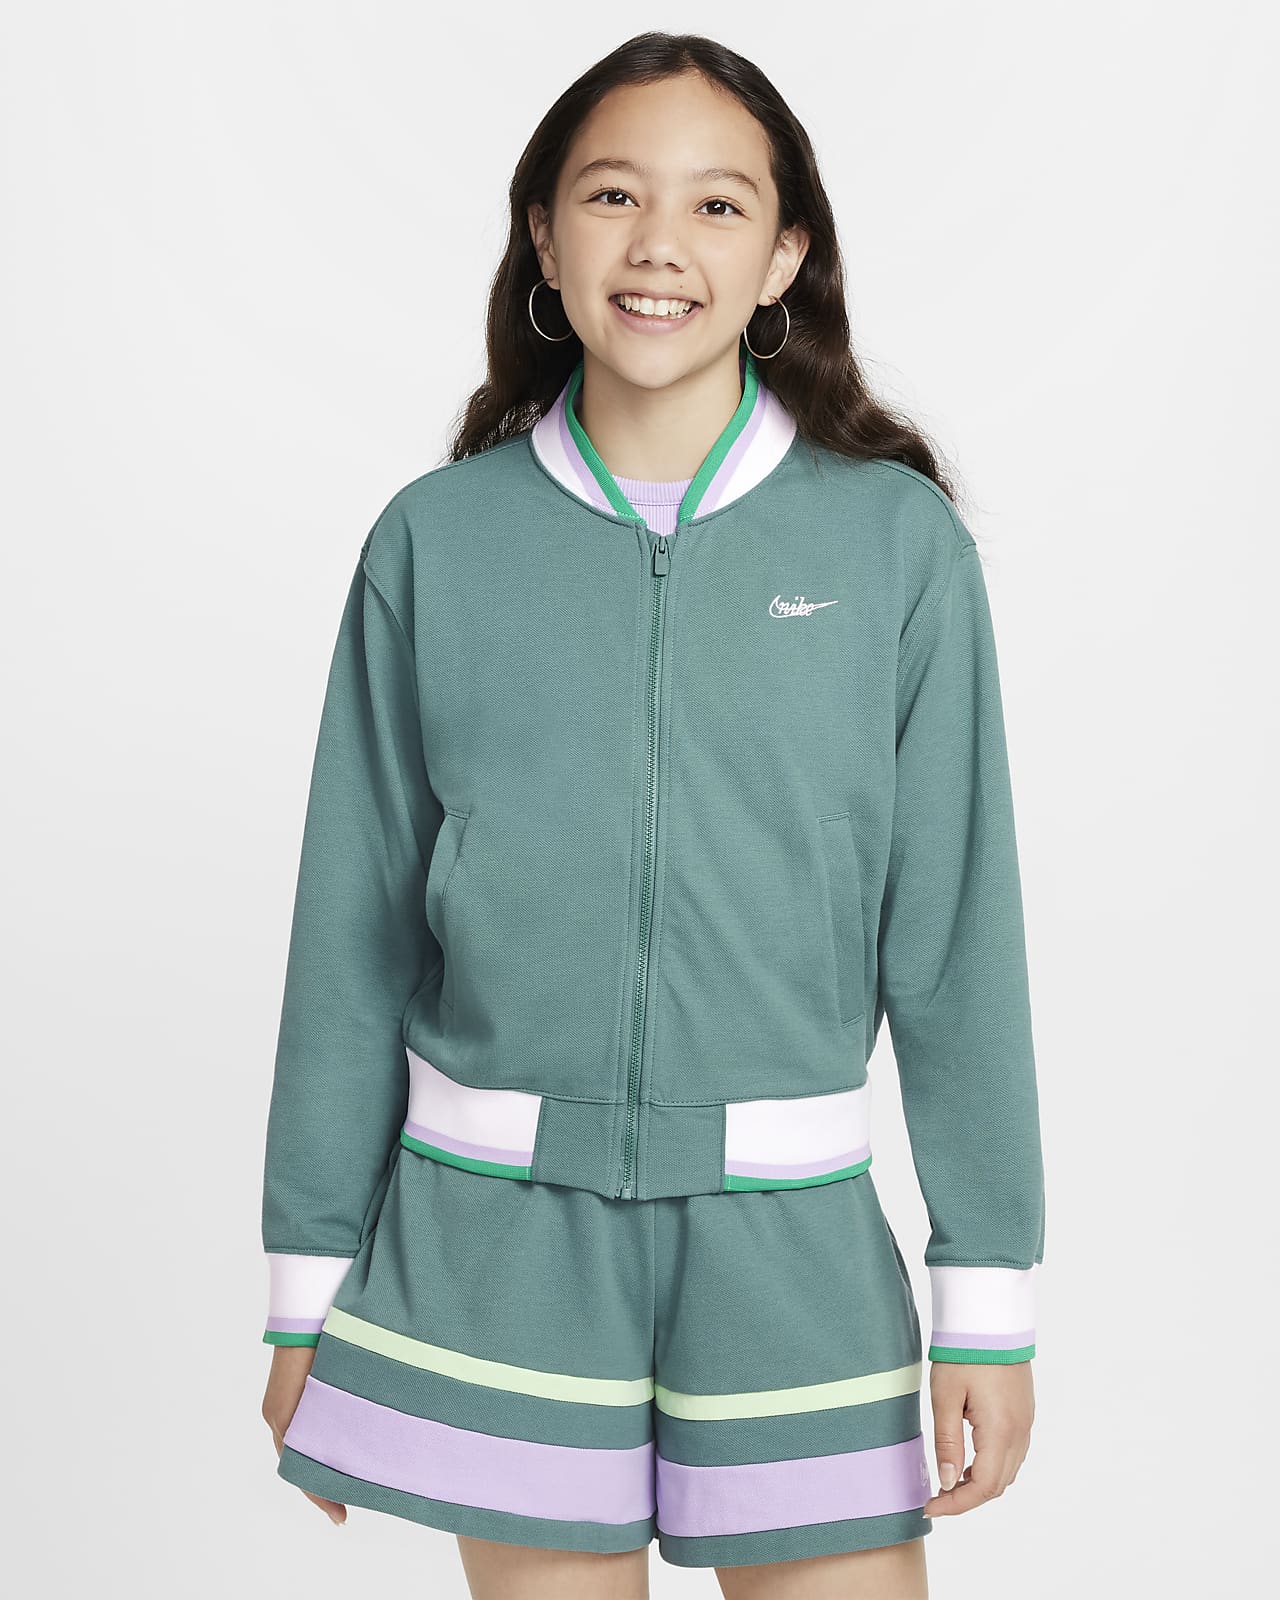 Nike Sportswear meisjesjack